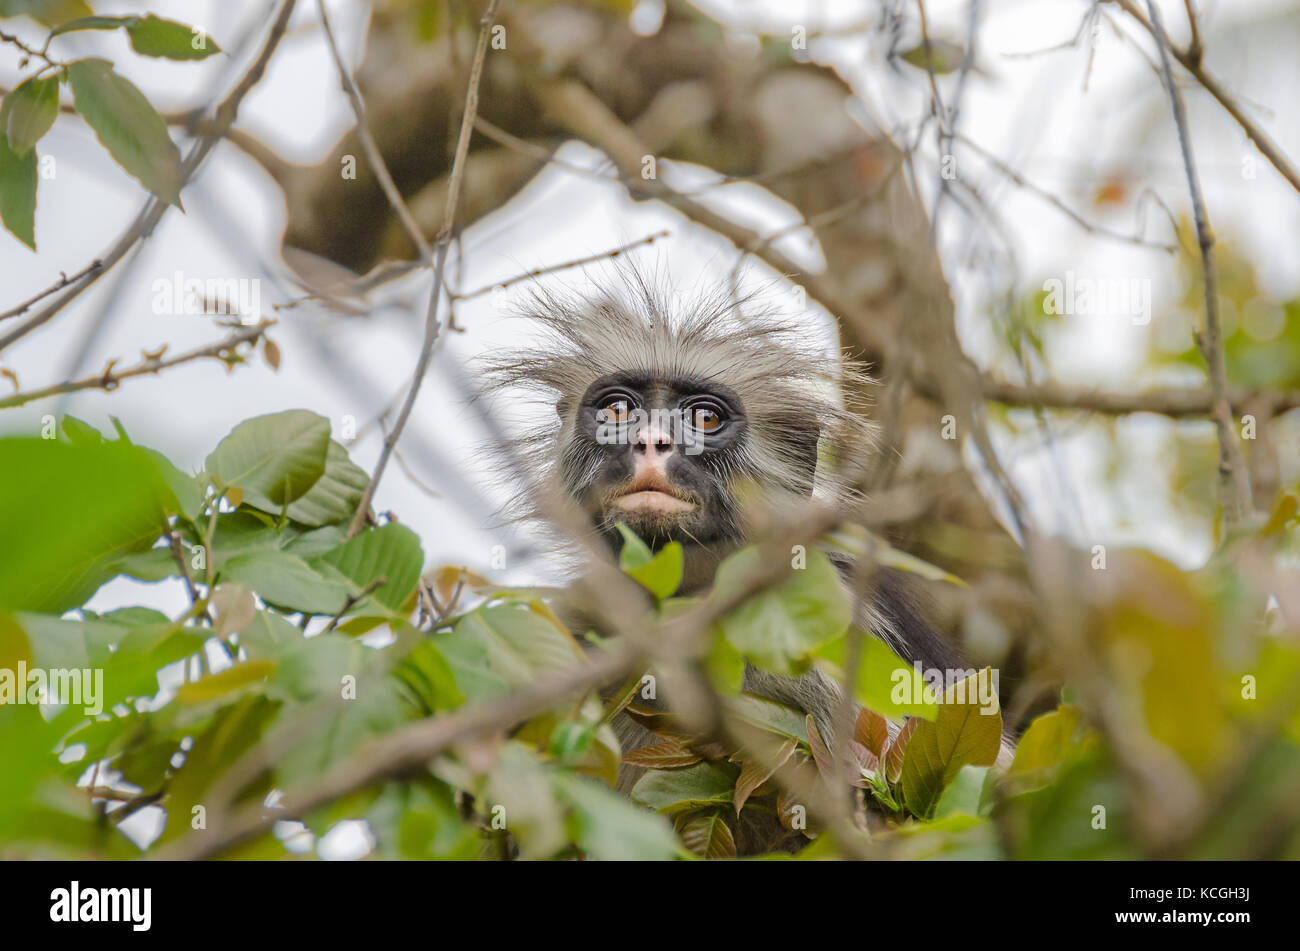 Zanzibar colobuses rosso o kirk's Red Colobus, scimmie del vecchio mondo i più minacciati gruppo tassonomico di primati in Africa, su un albero nella foresta di Jozani Foto Stock